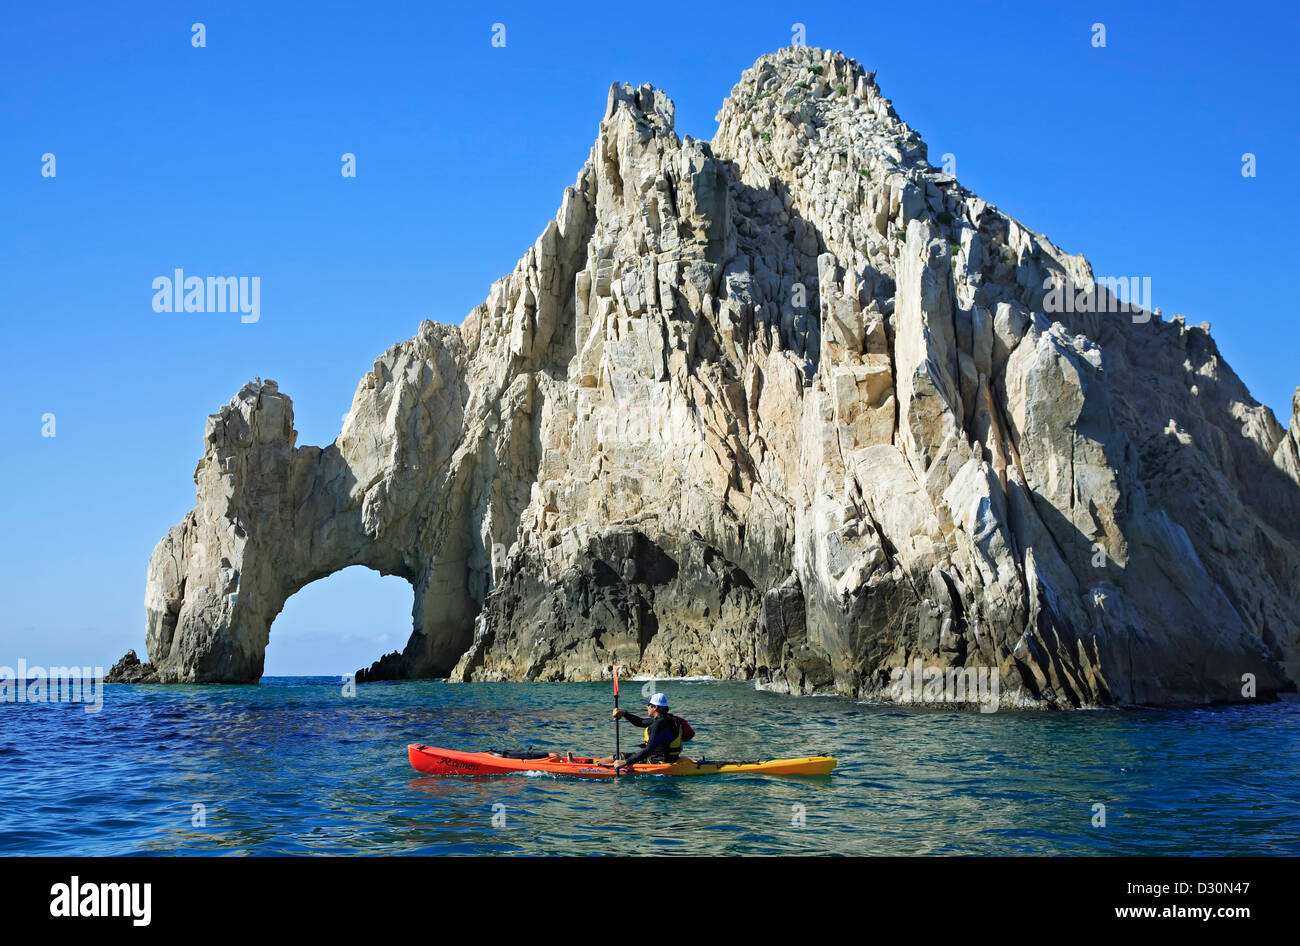 La kayakiste à El Arco (l'arche), la formation de granite près de Cabo San Lucas, Baja California Sur, Mexique Banque D'Images